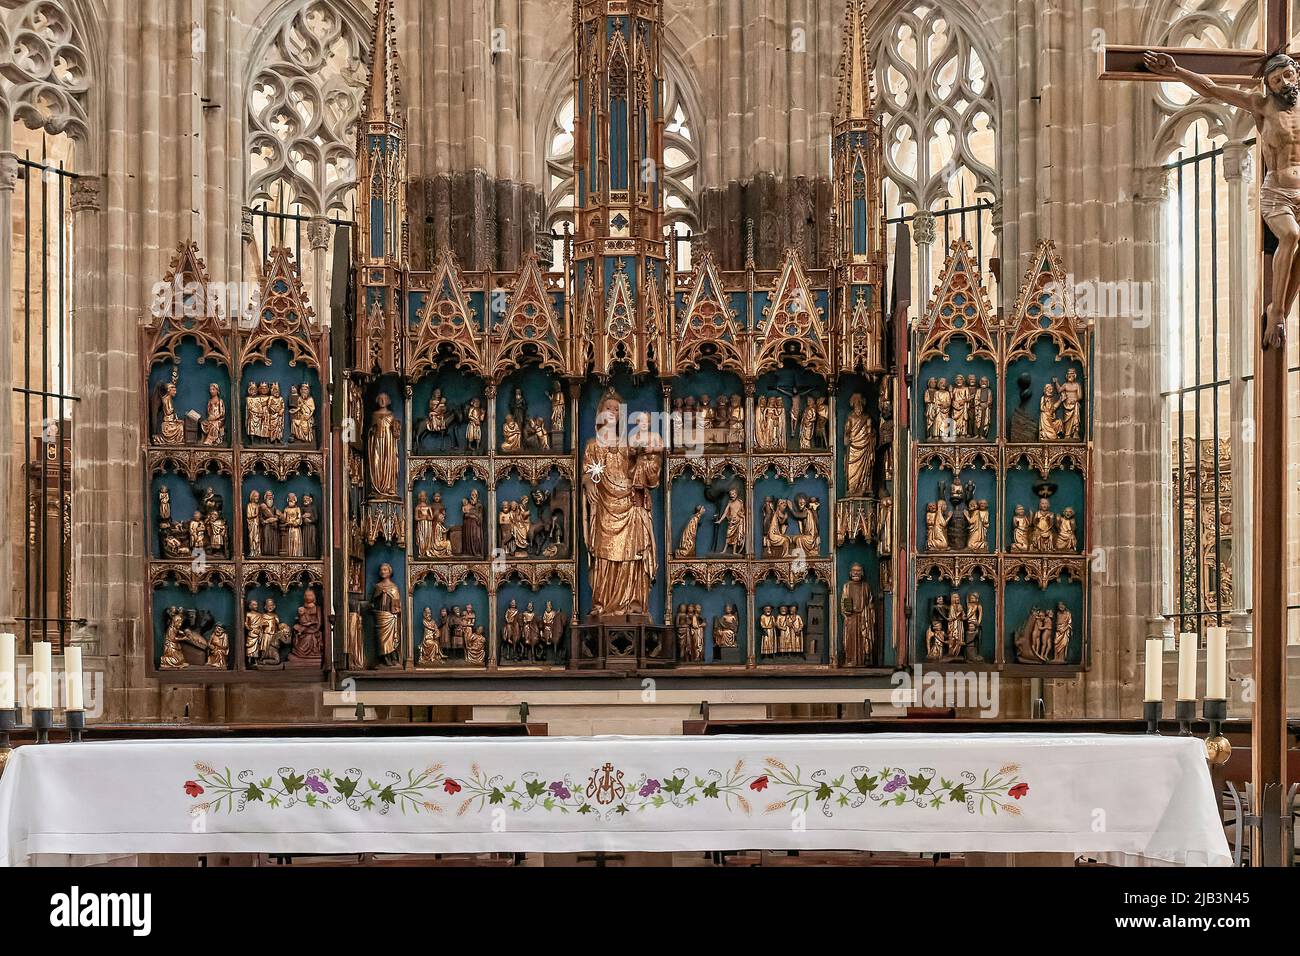 Intérieur gothique catalan de la basilique cathédrale de Santa María de Tortosa datant du 14th siècle, province de Tarragone, Catalogne, Espagne, Europe Banque D'Images